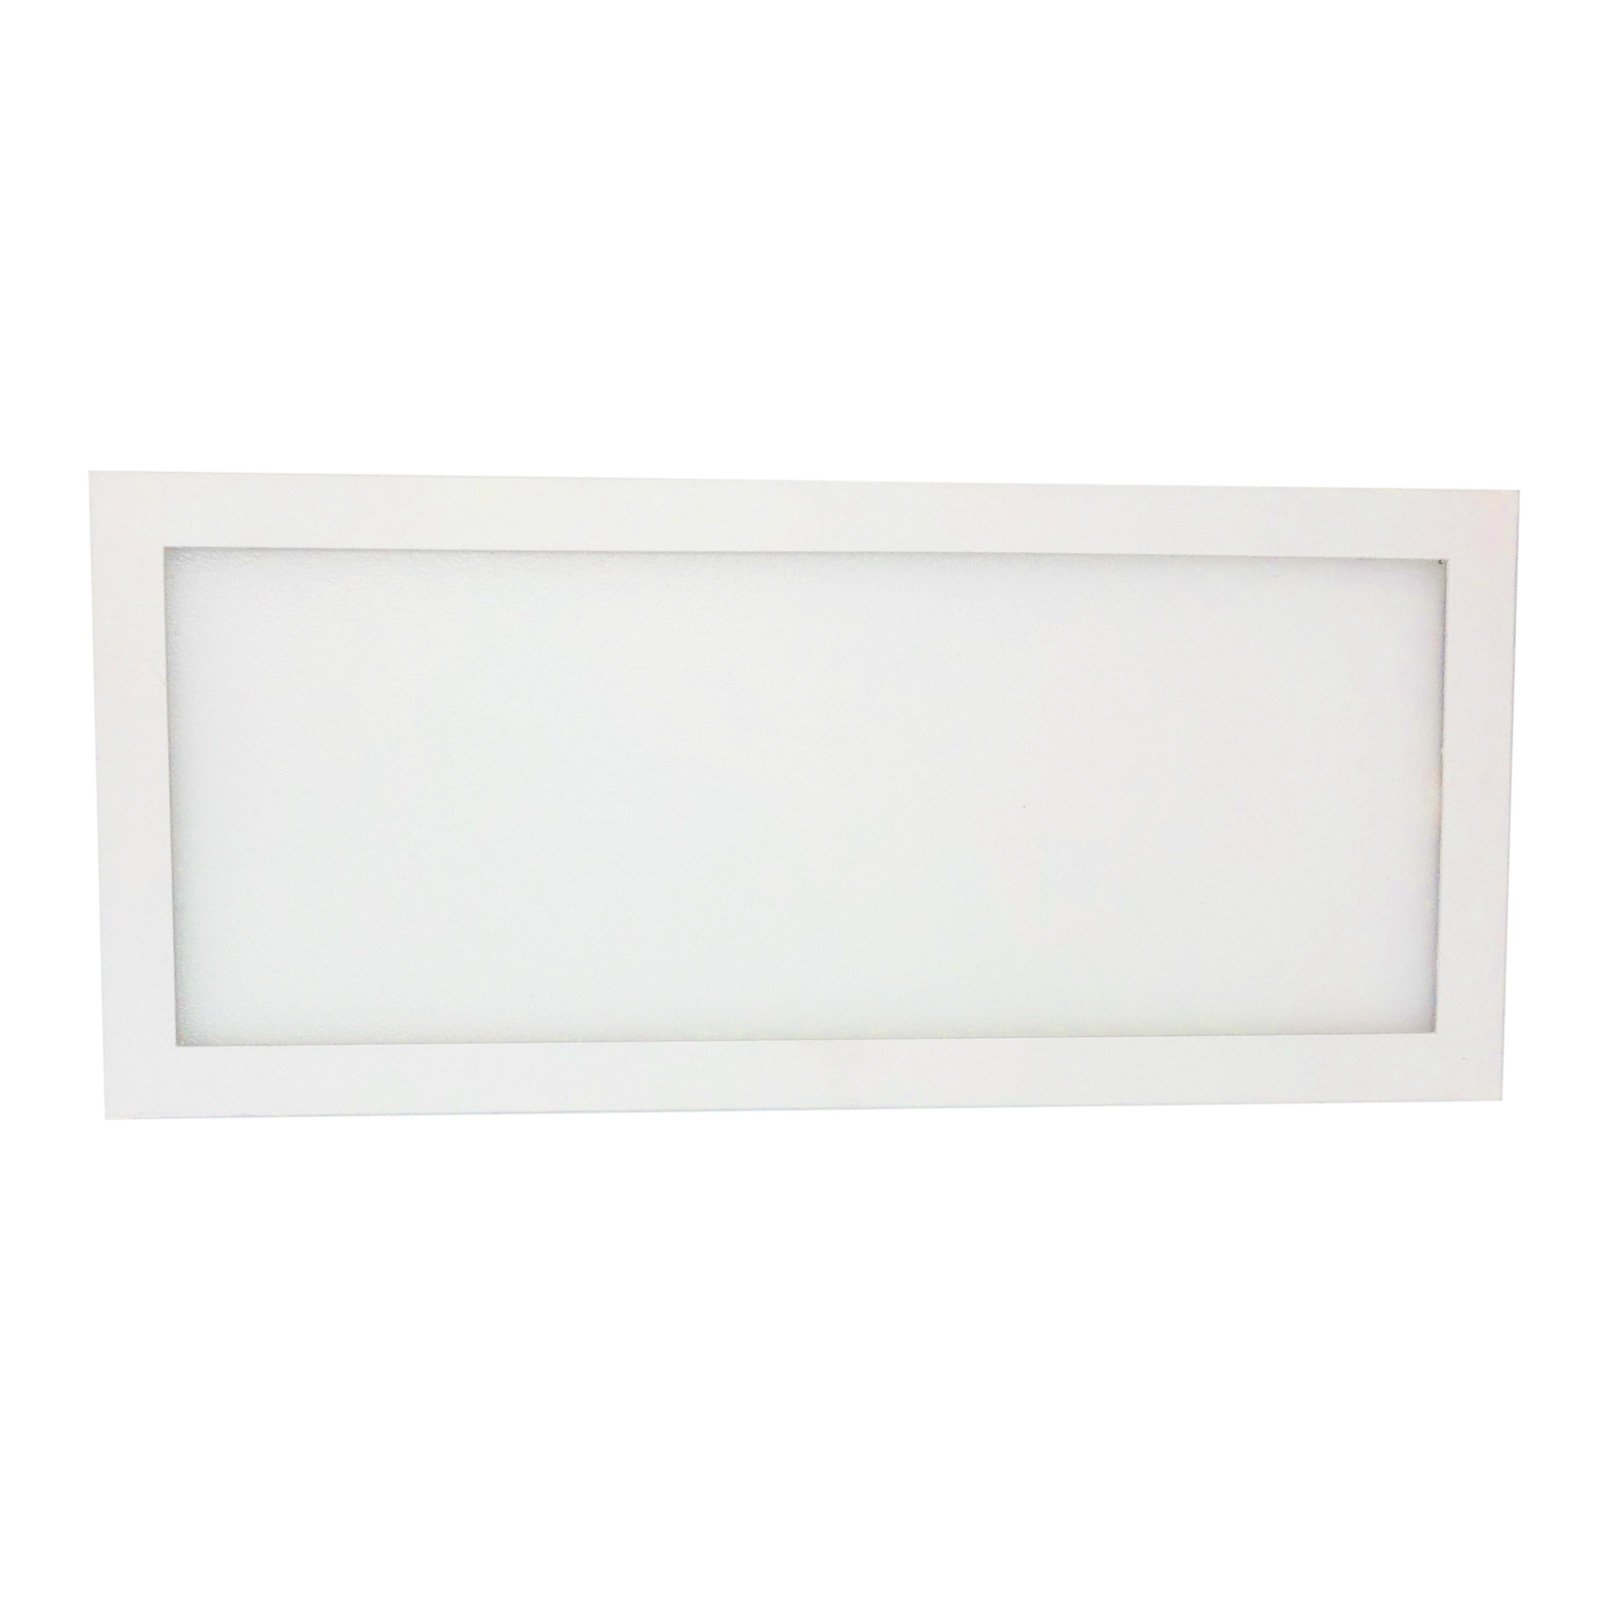 LED-es szekrény alatti világítás Unta Slim 5W, fehér színben